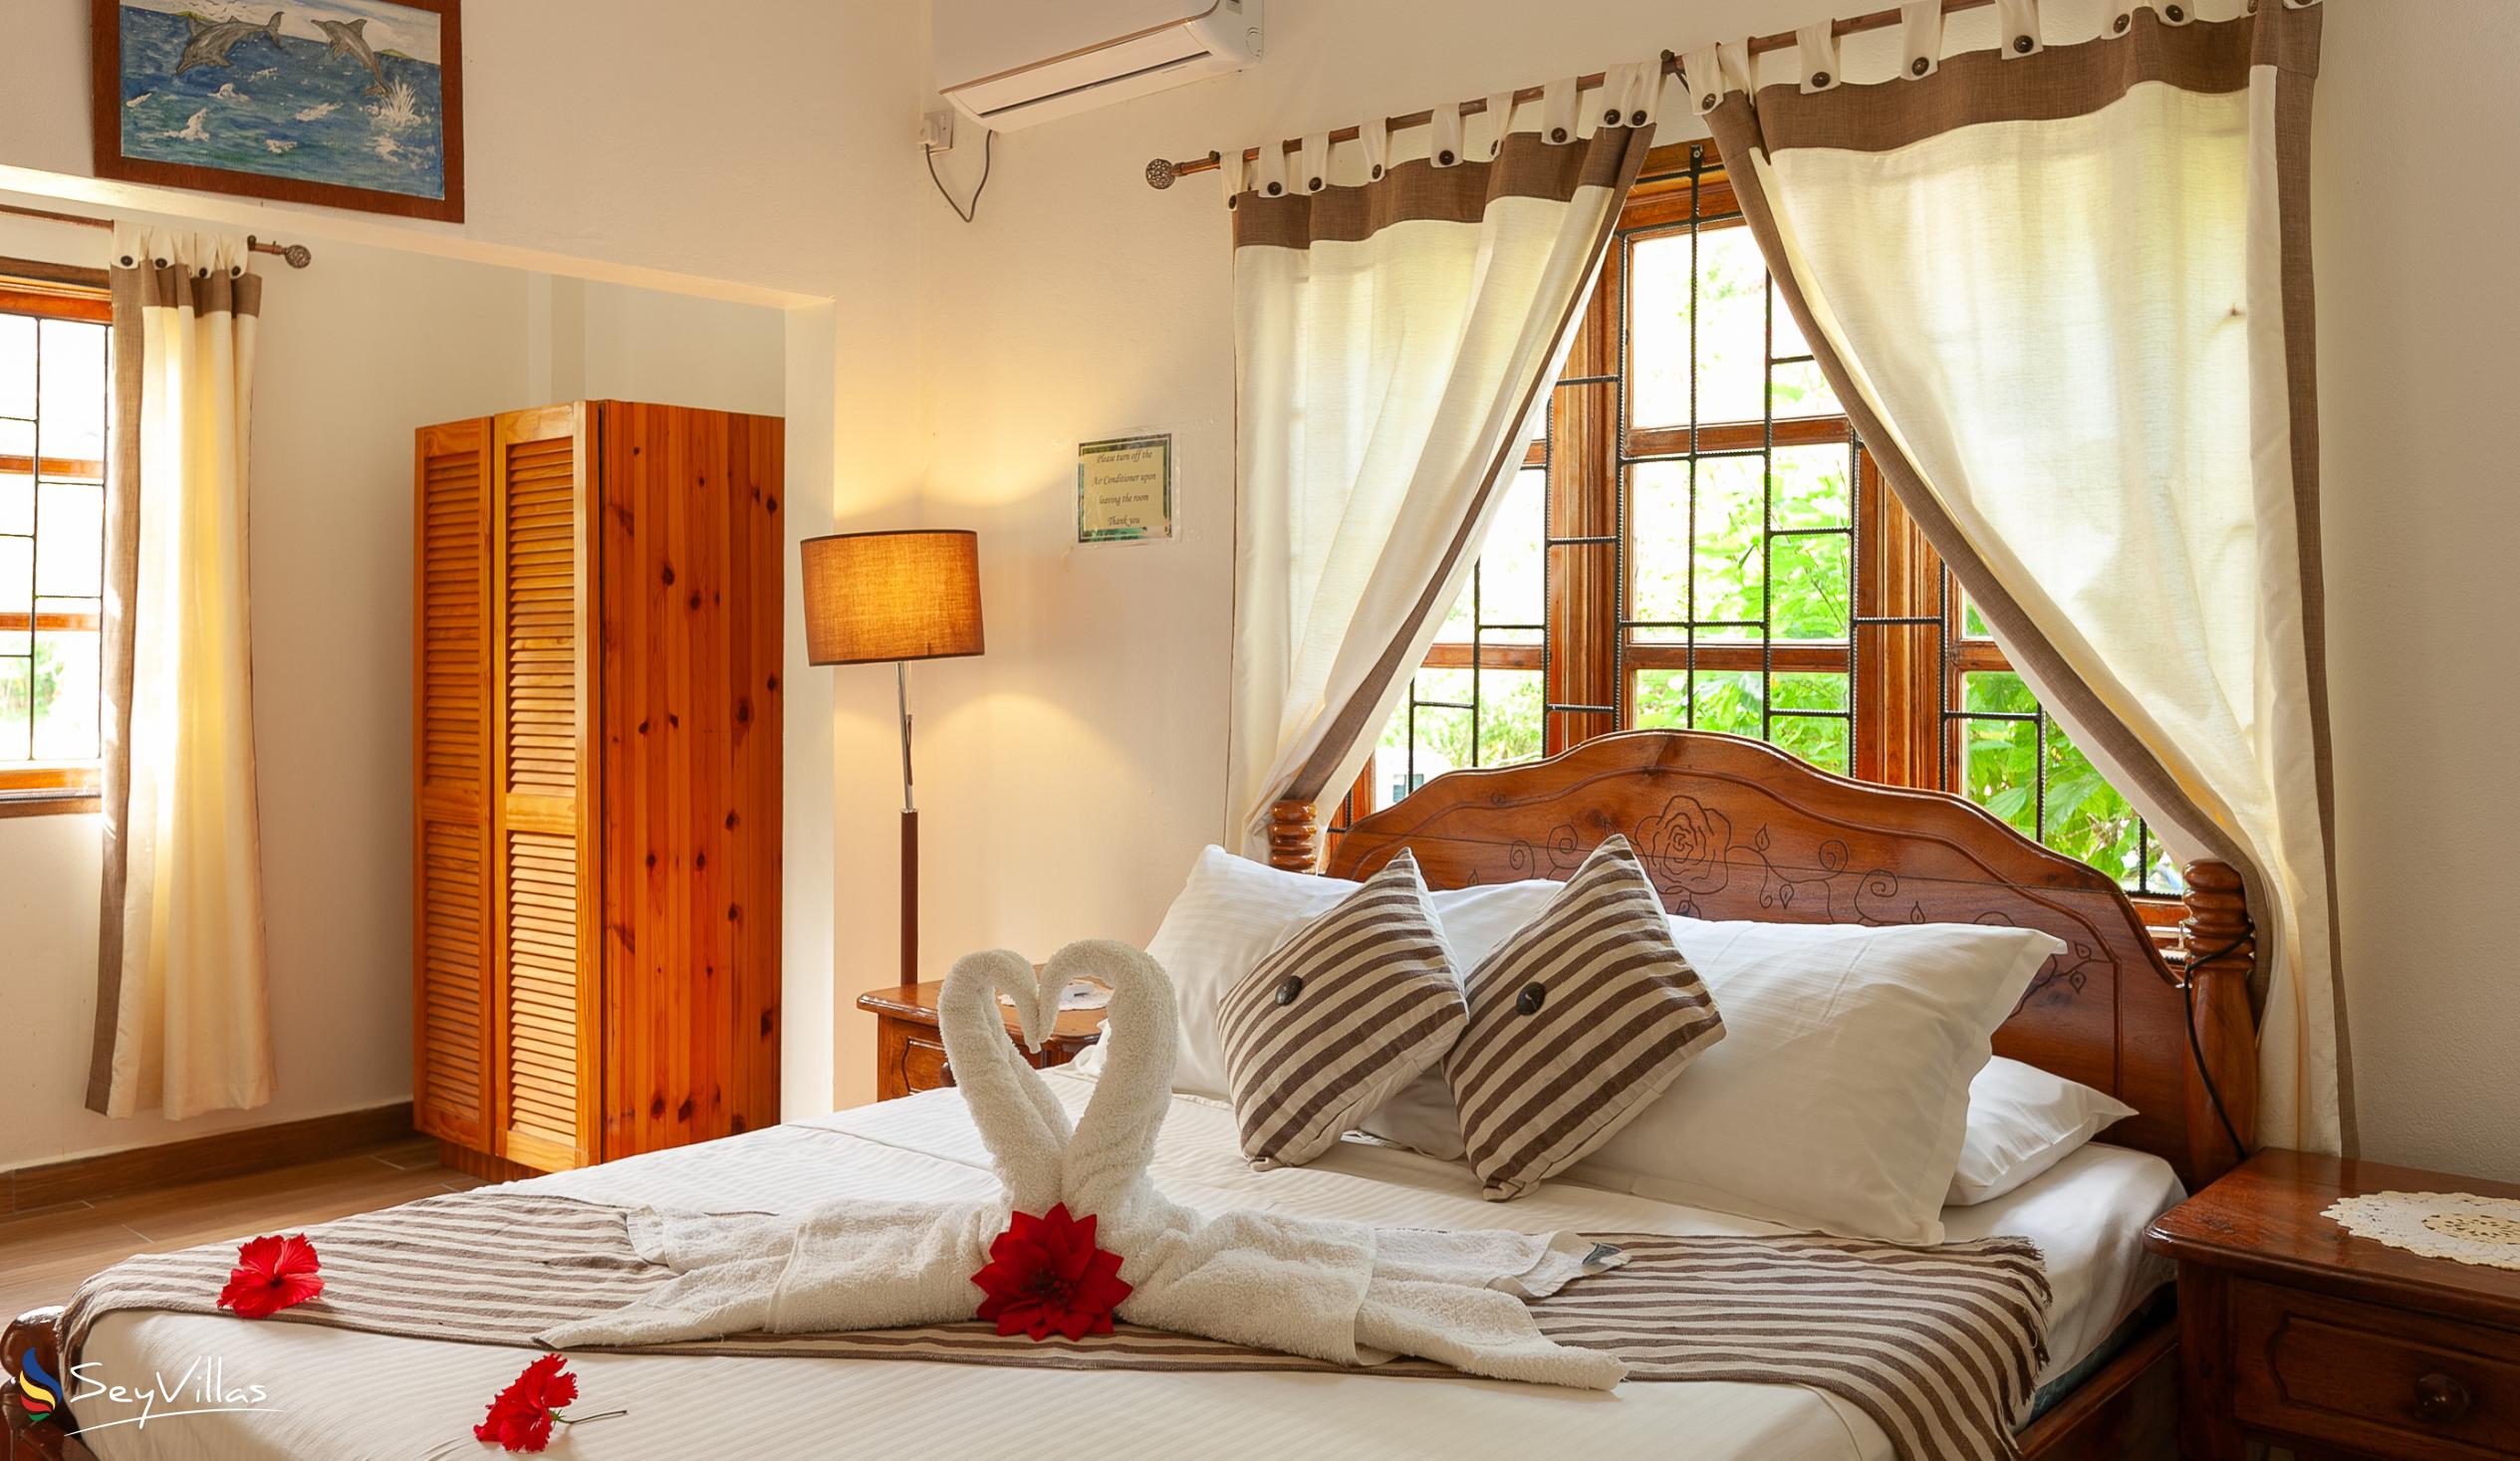 Photo 69: Tannette's Villa - Standard Double Room - La Digue (Seychelles)